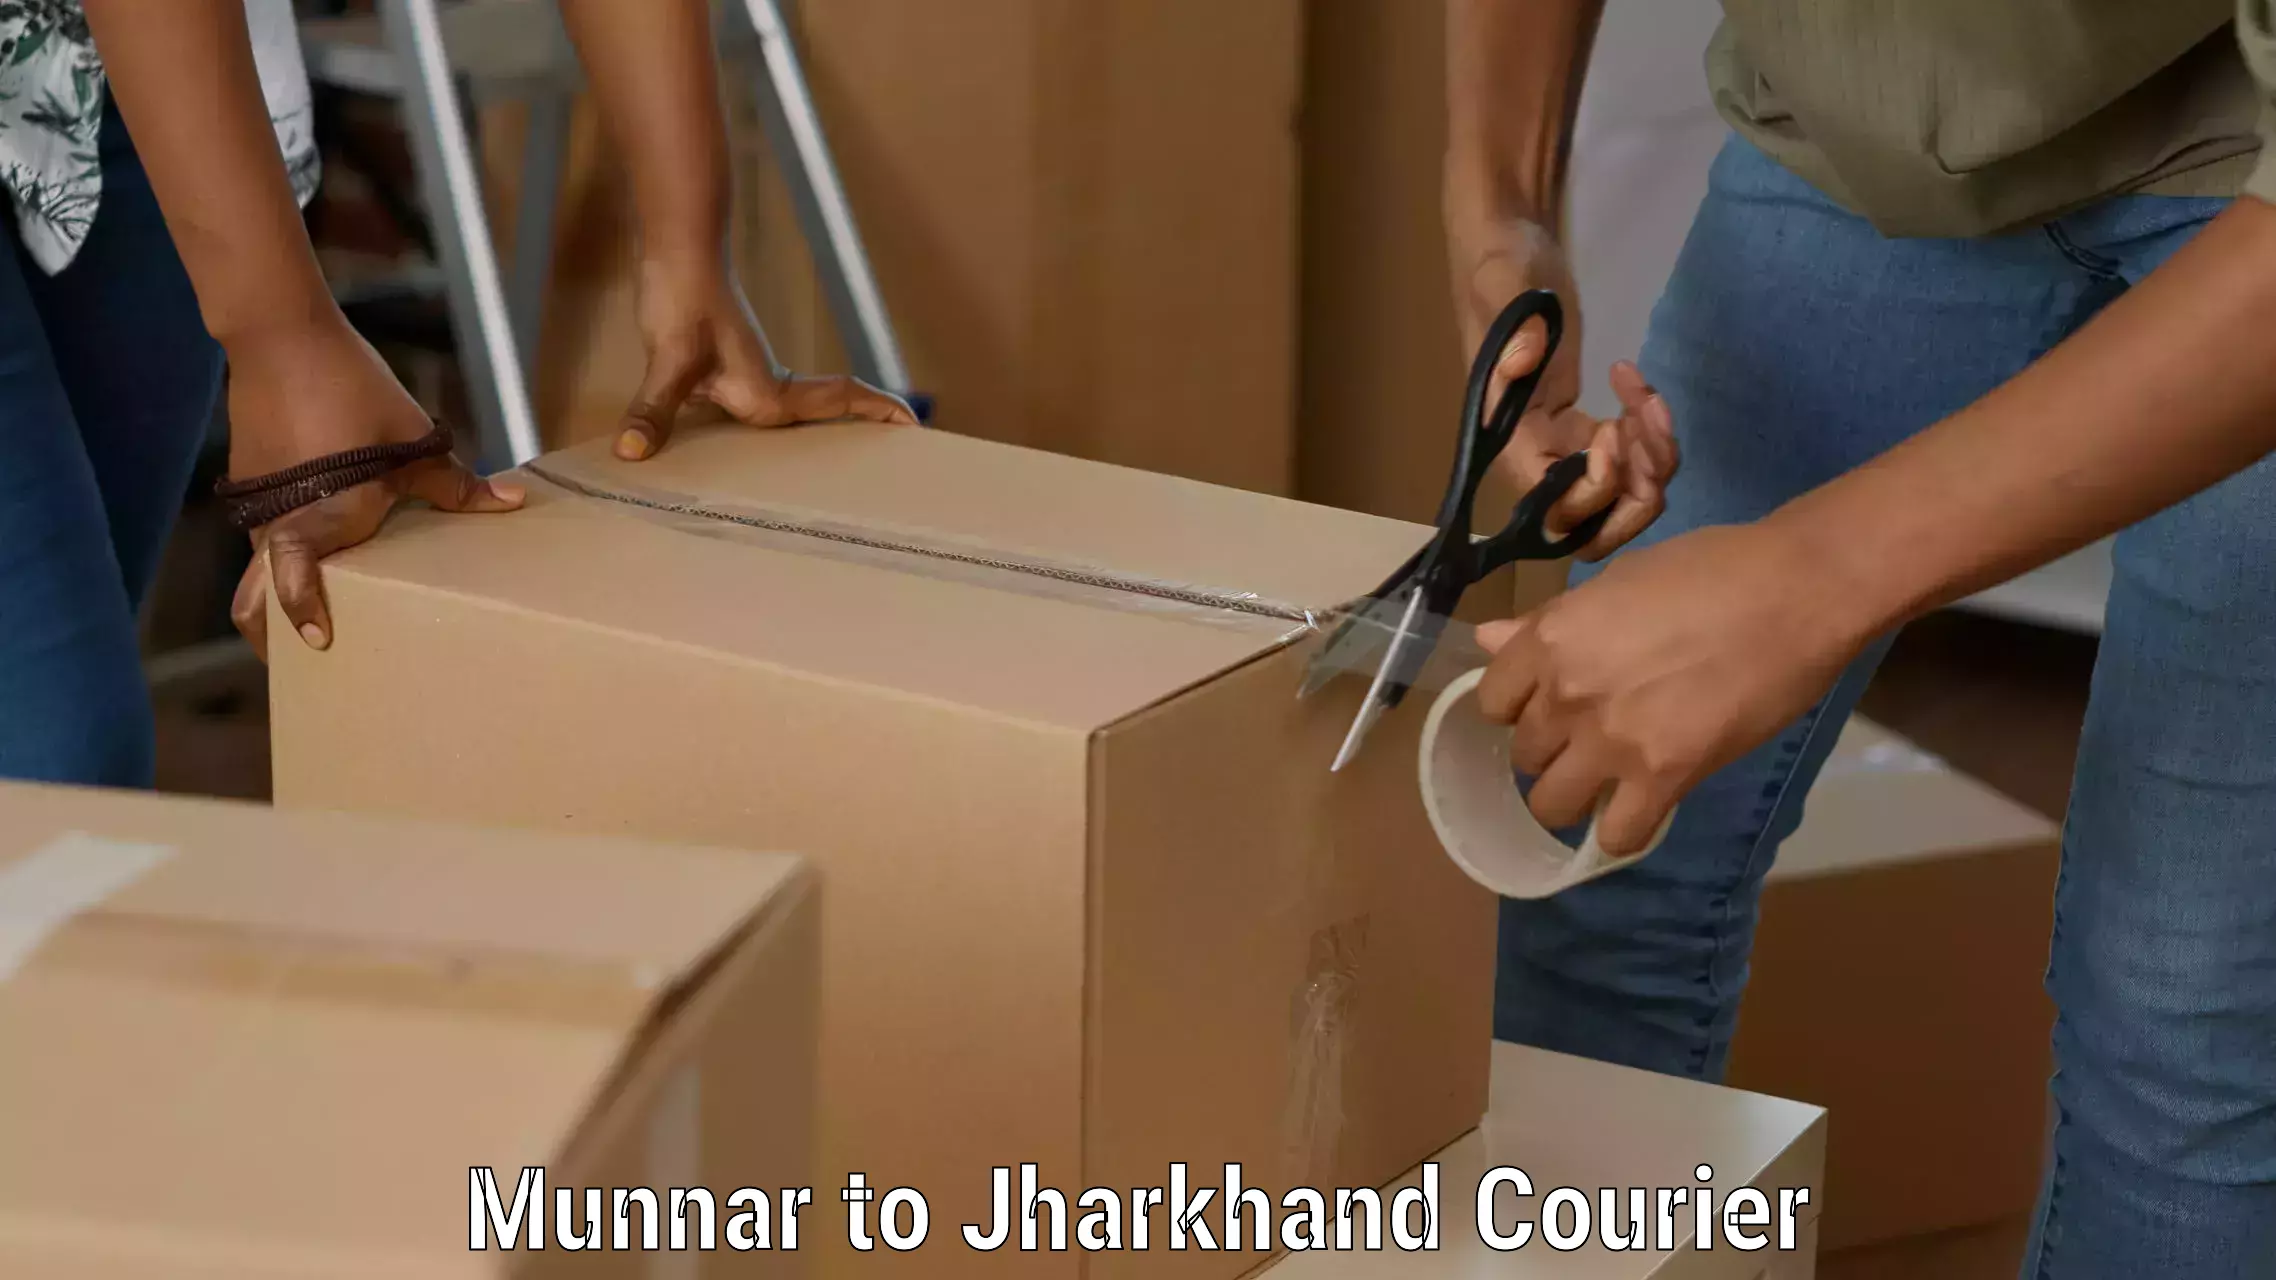 Quality courier partnerships Munnar to Chakuliya